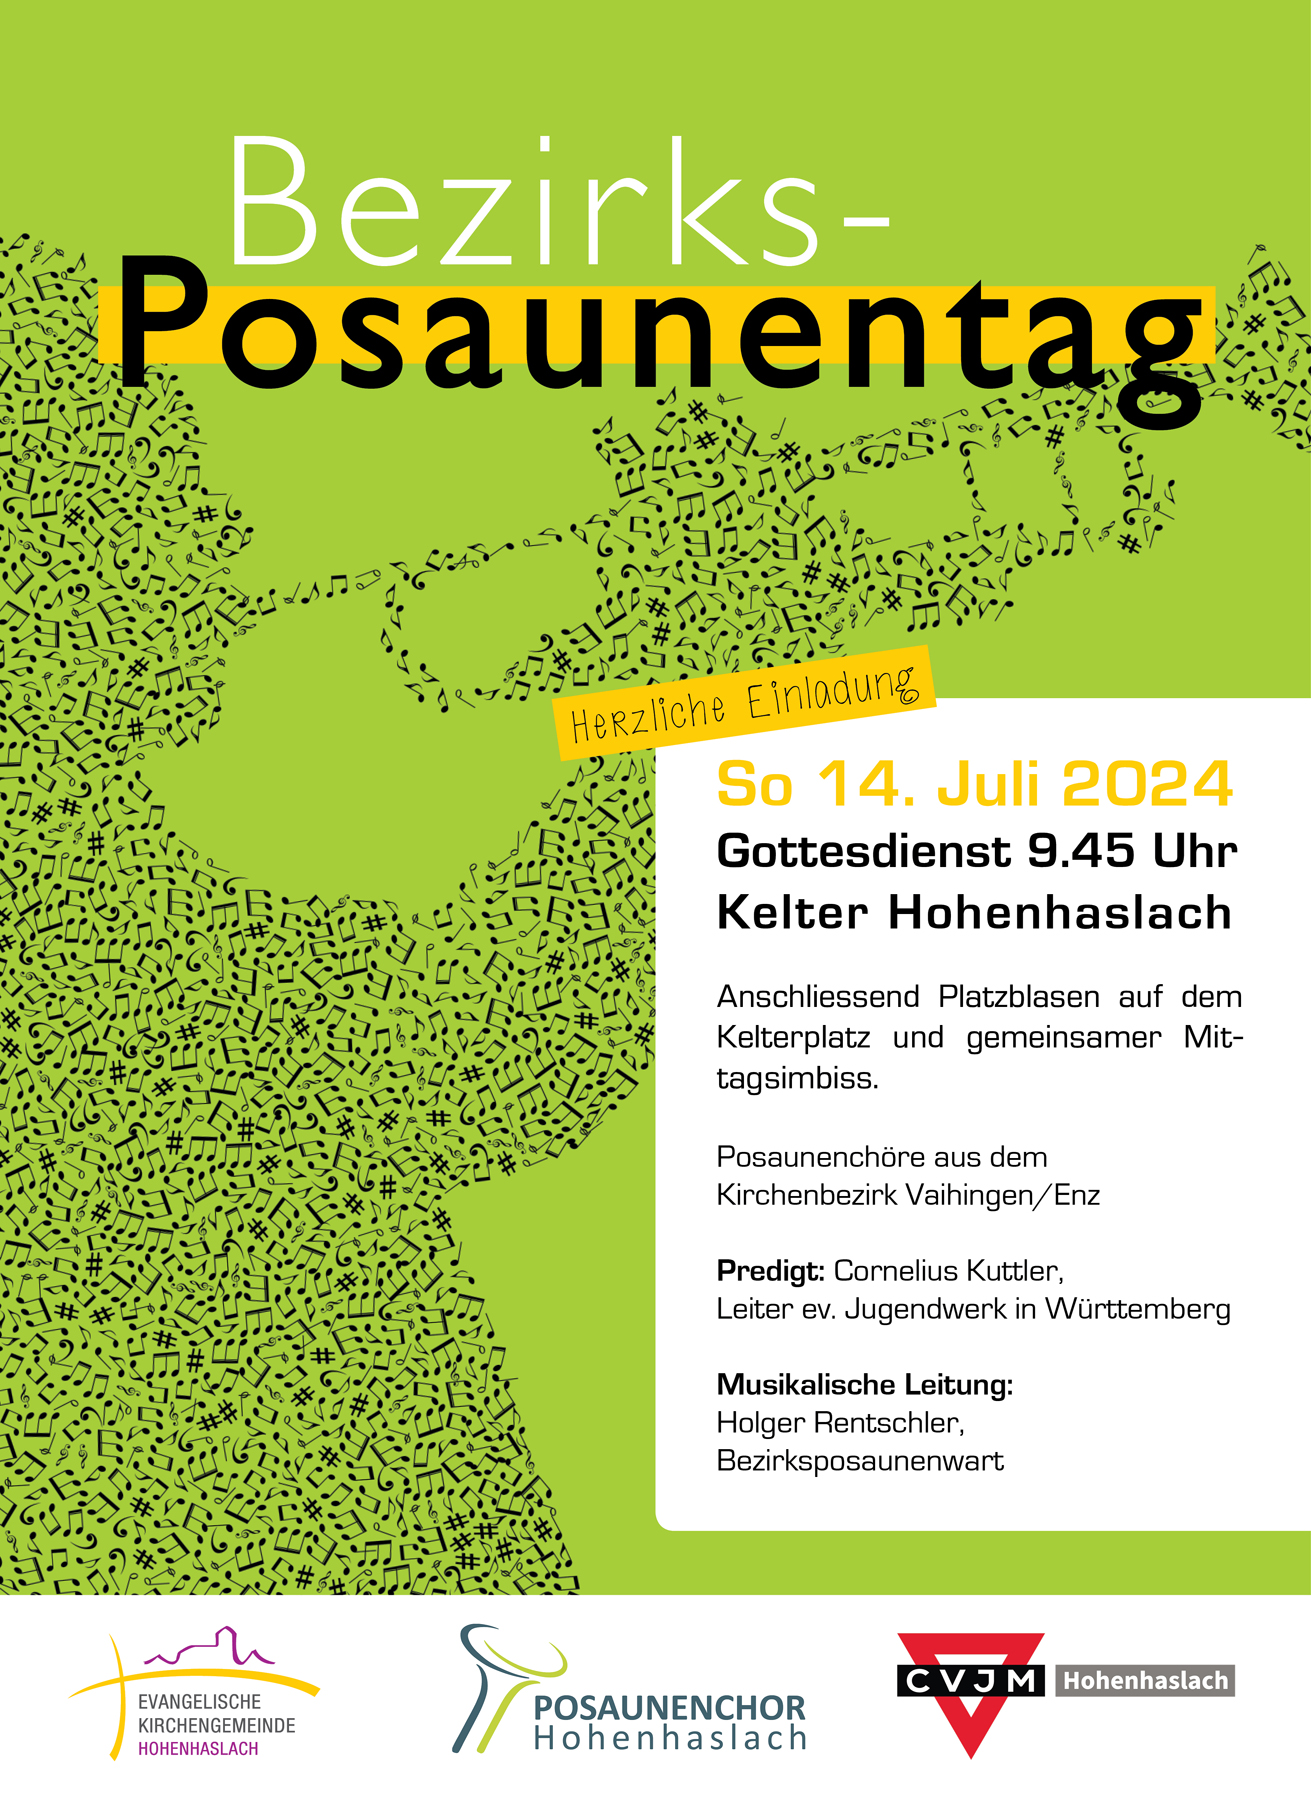 Featured image for “Bezirksposaunentag am Sonntag 14. Juli in der Kelter Hohenhaslach”